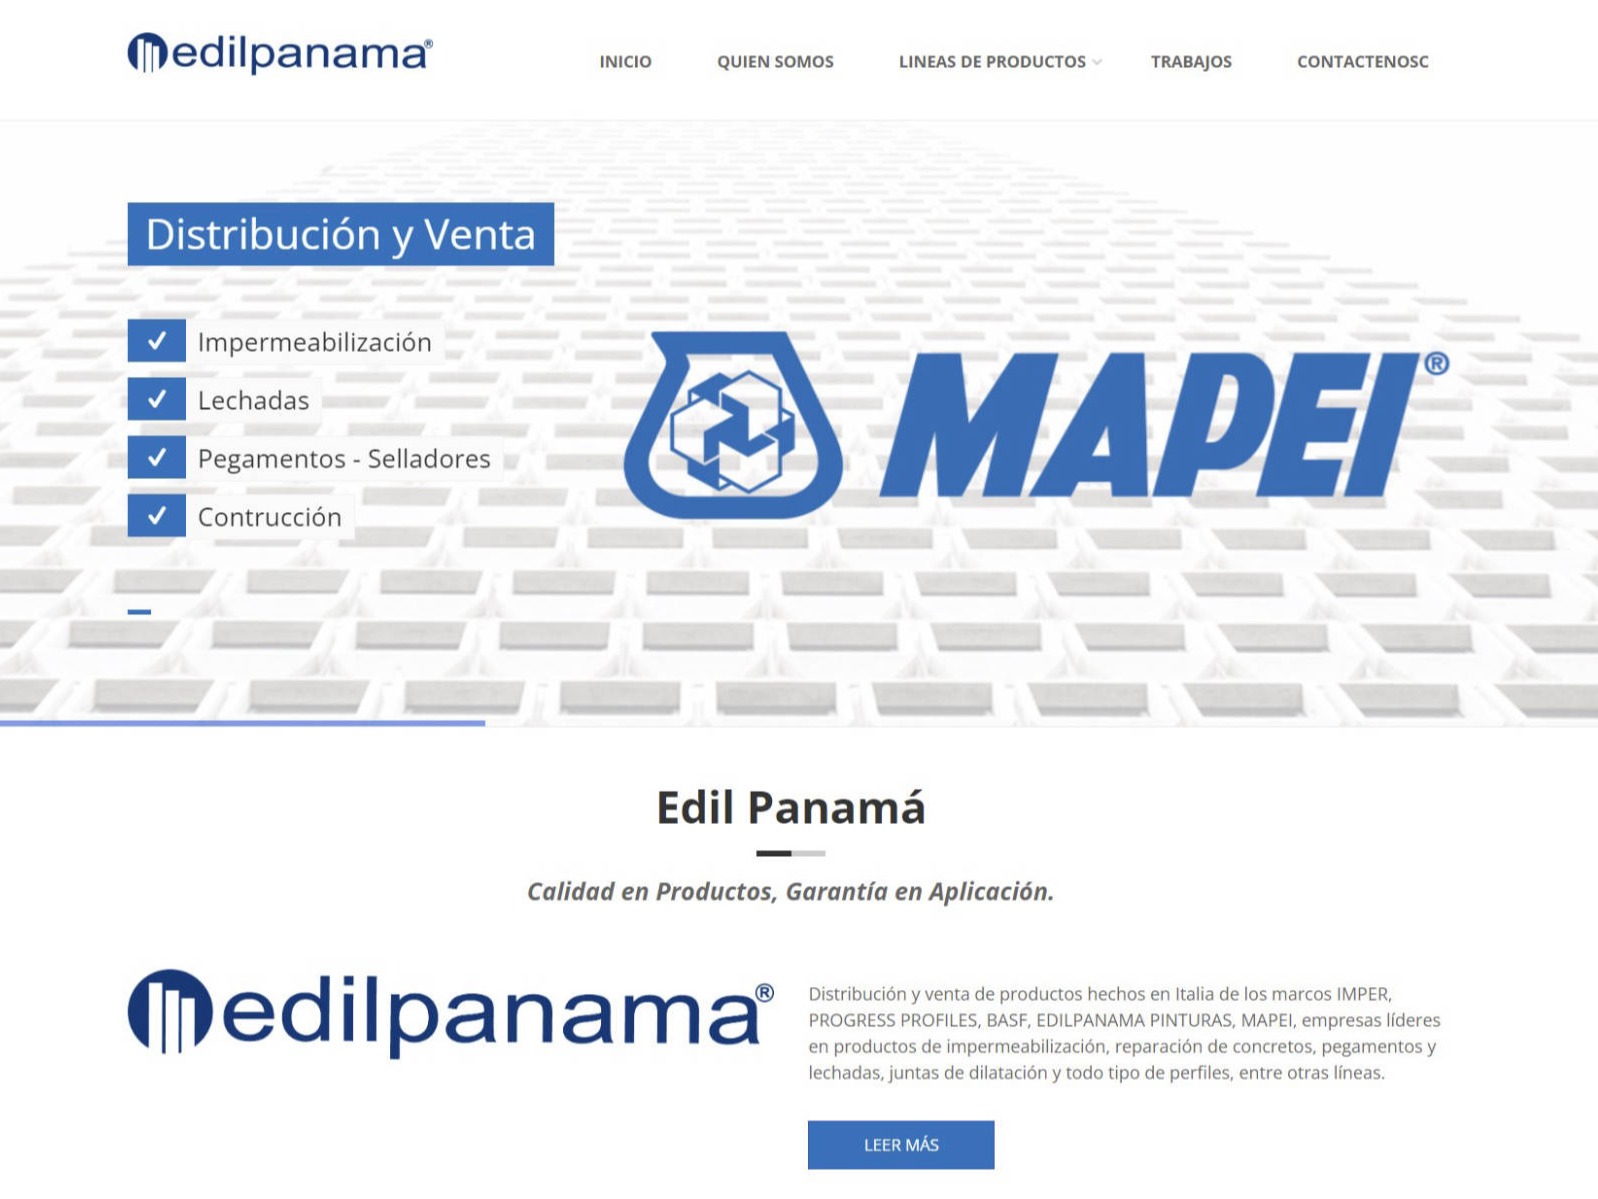 Edilpanama.com